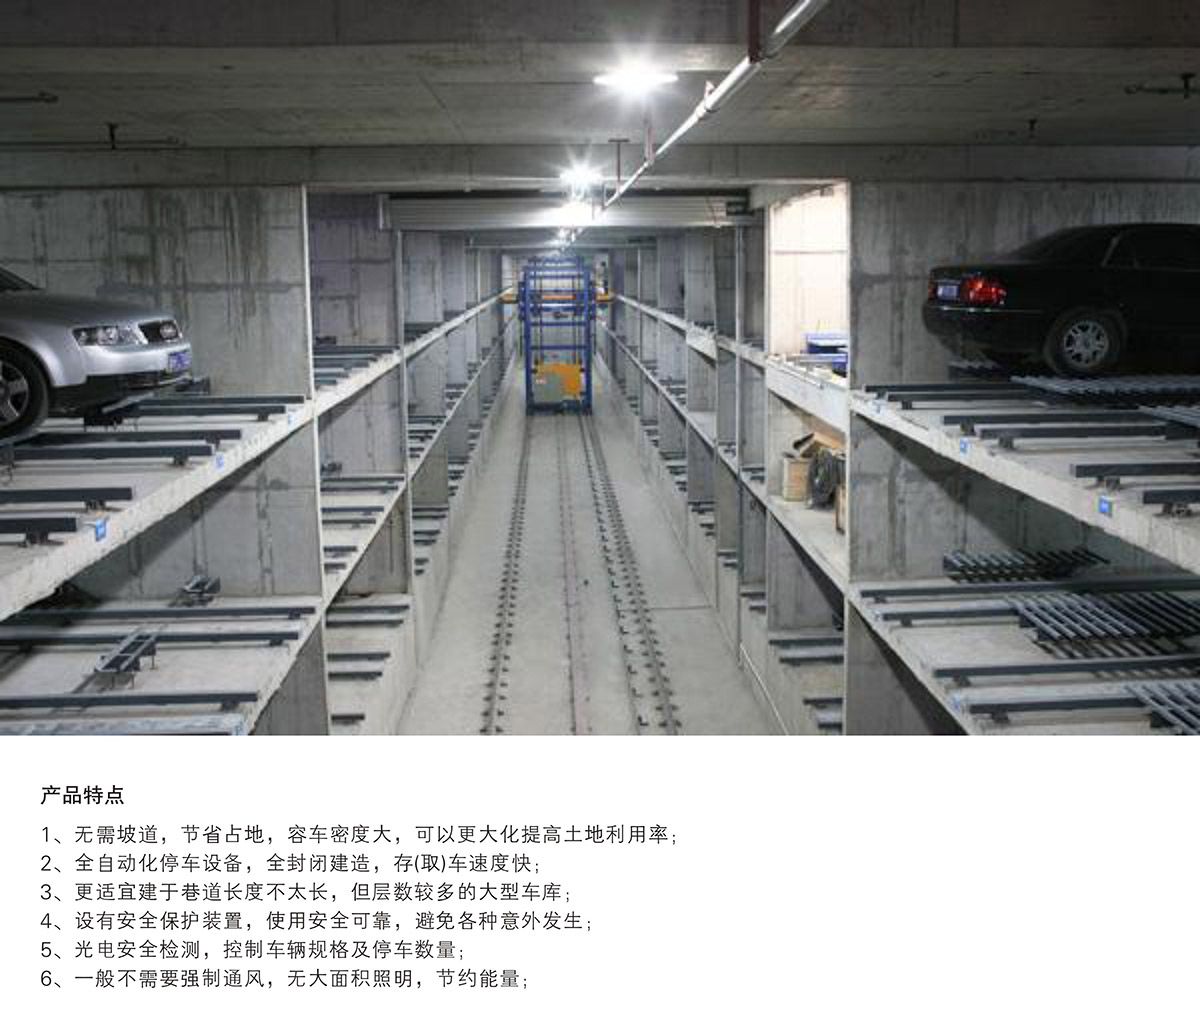 重庆PXD巷道堆垛立体停车设备产品特点.jpg